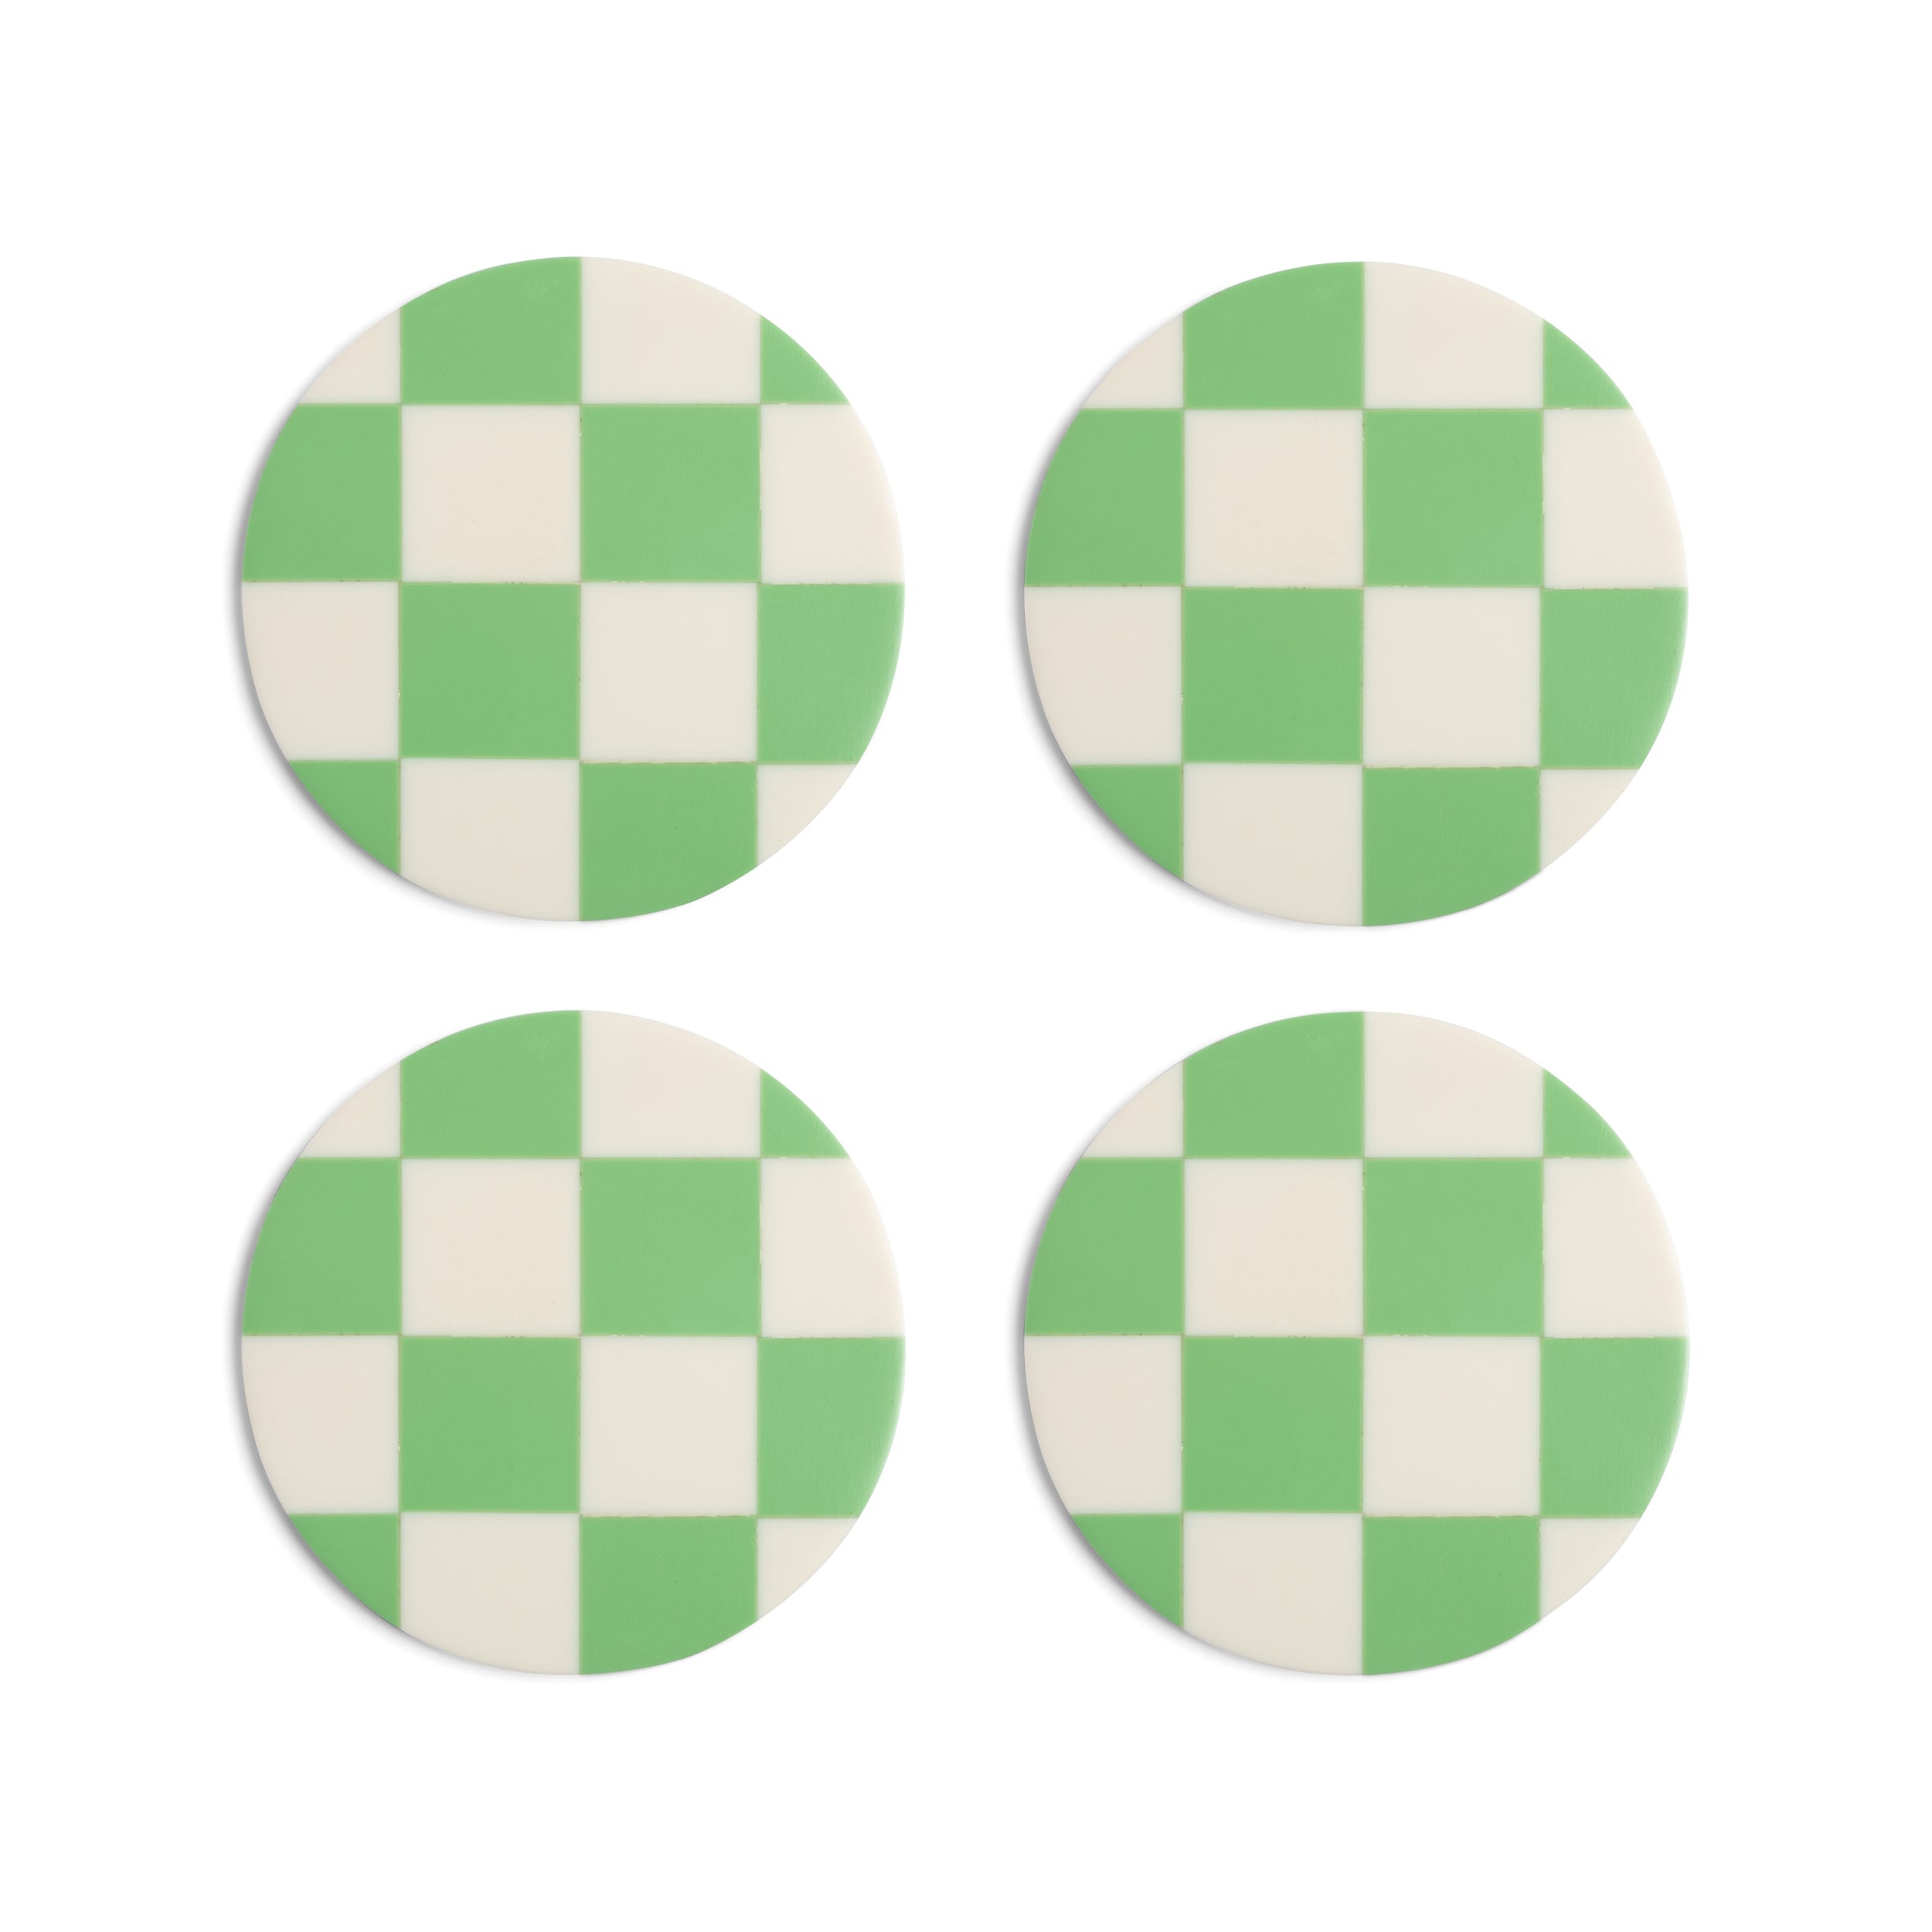 &Klevering - Untersetzer Checkerboard grün